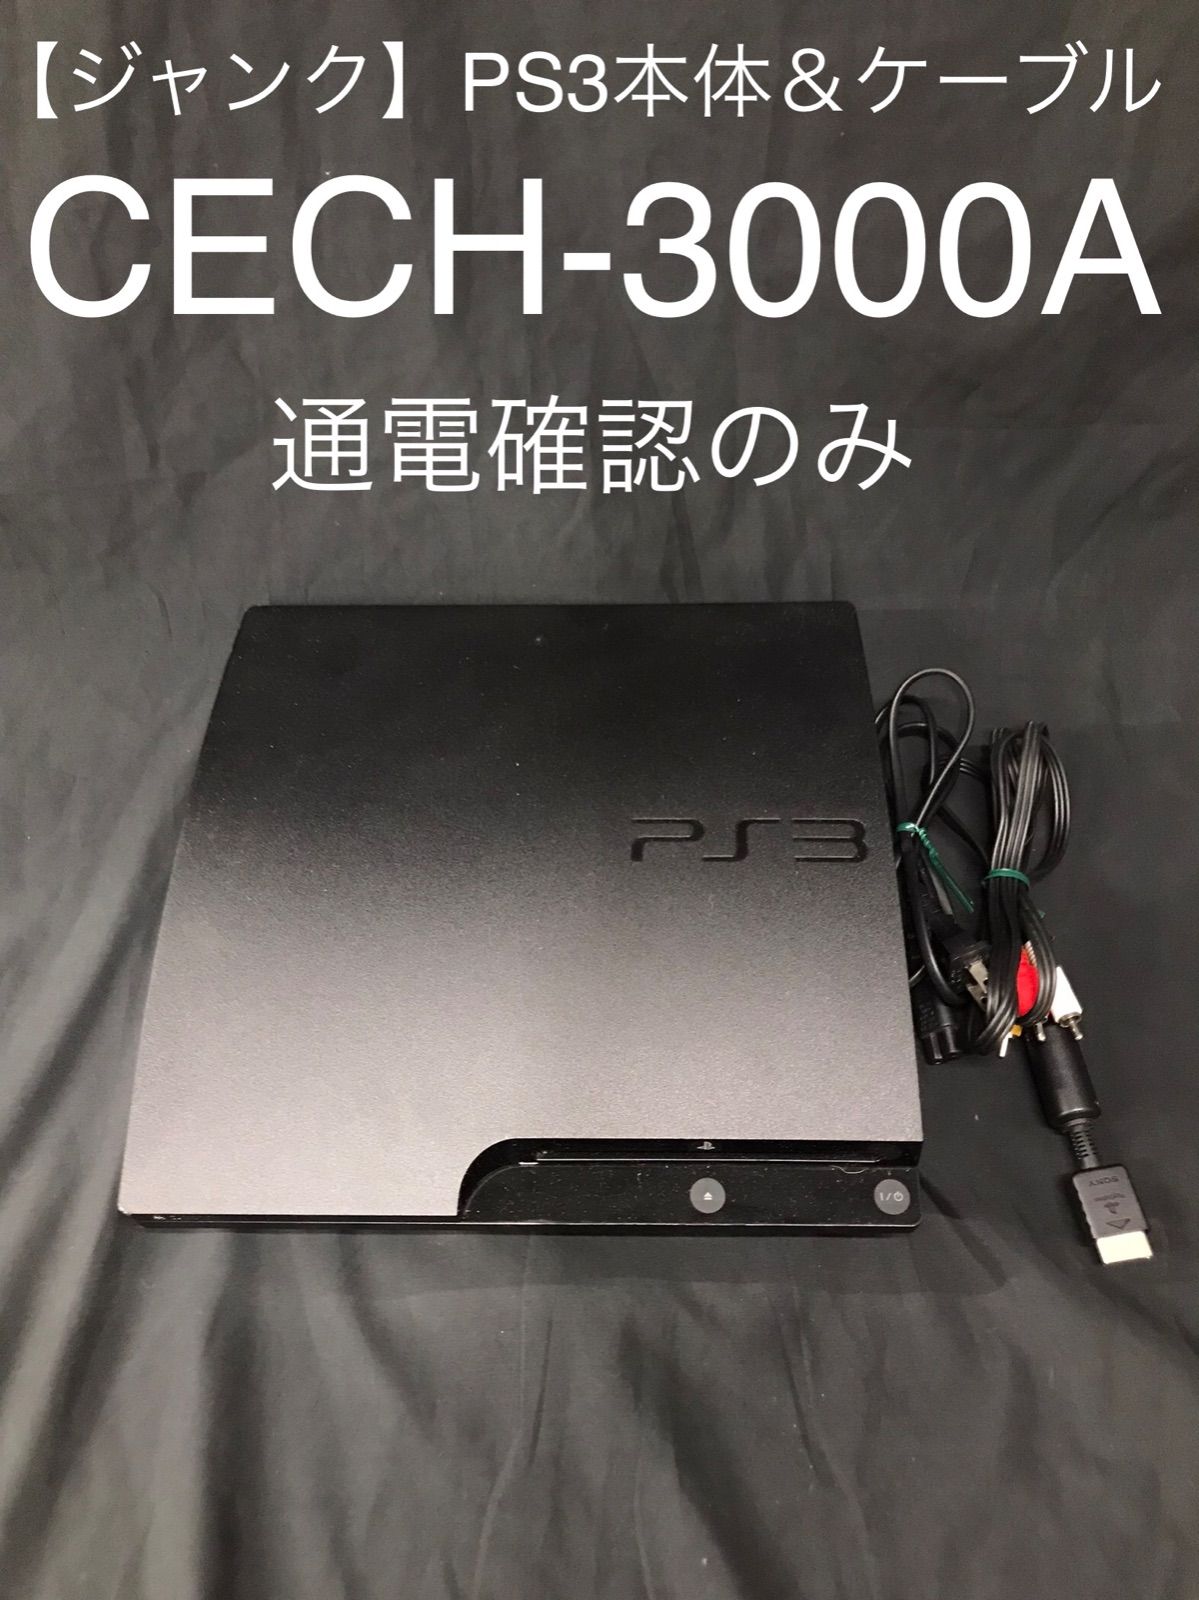 J3【ジャンク】PS3本体のみ CECH-3000A ブラック - chamomile